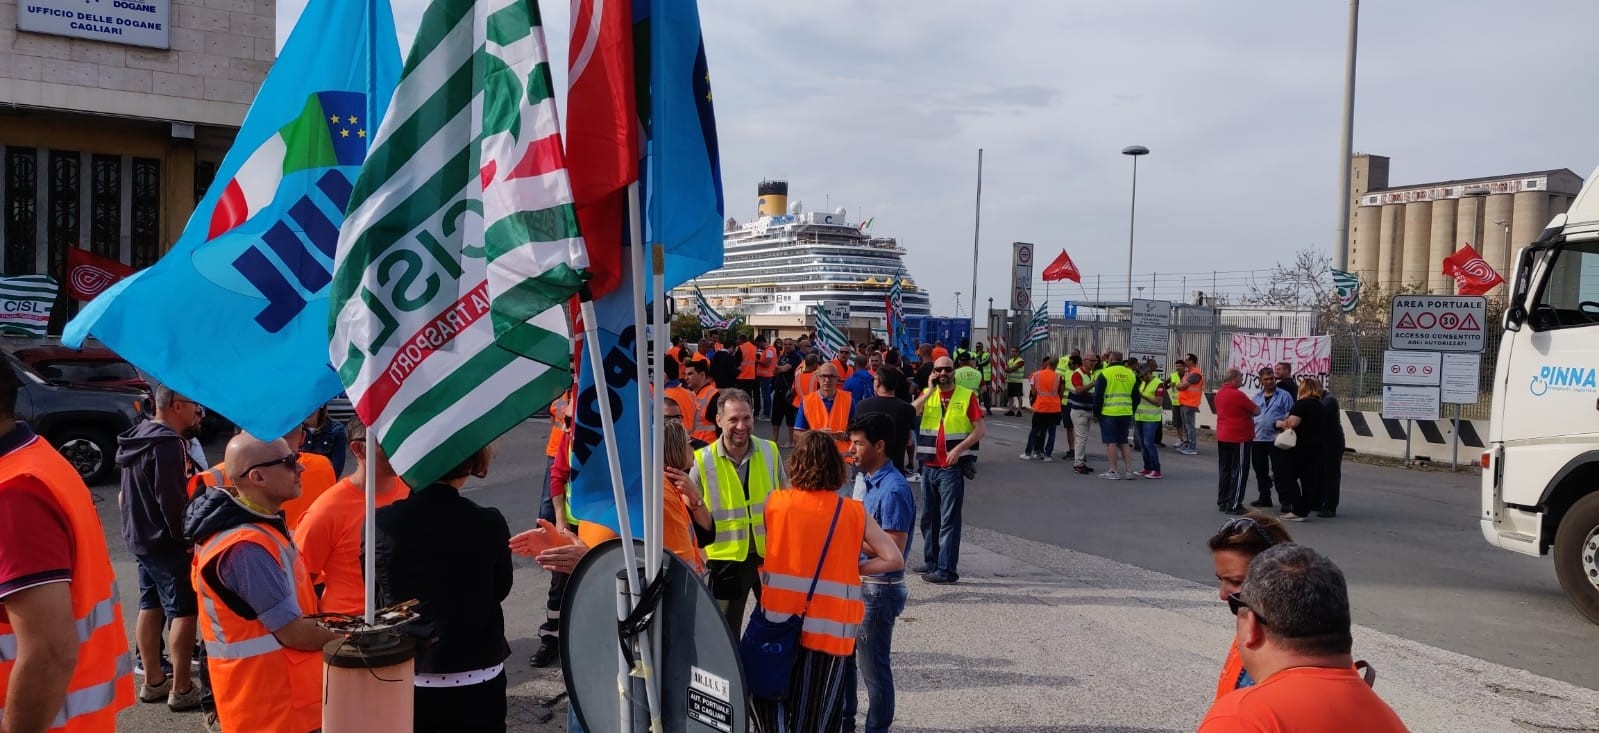 Porto di Cagliari, Uiltrasporti: preoccupazione alta per tutto il sistema portuale italiano